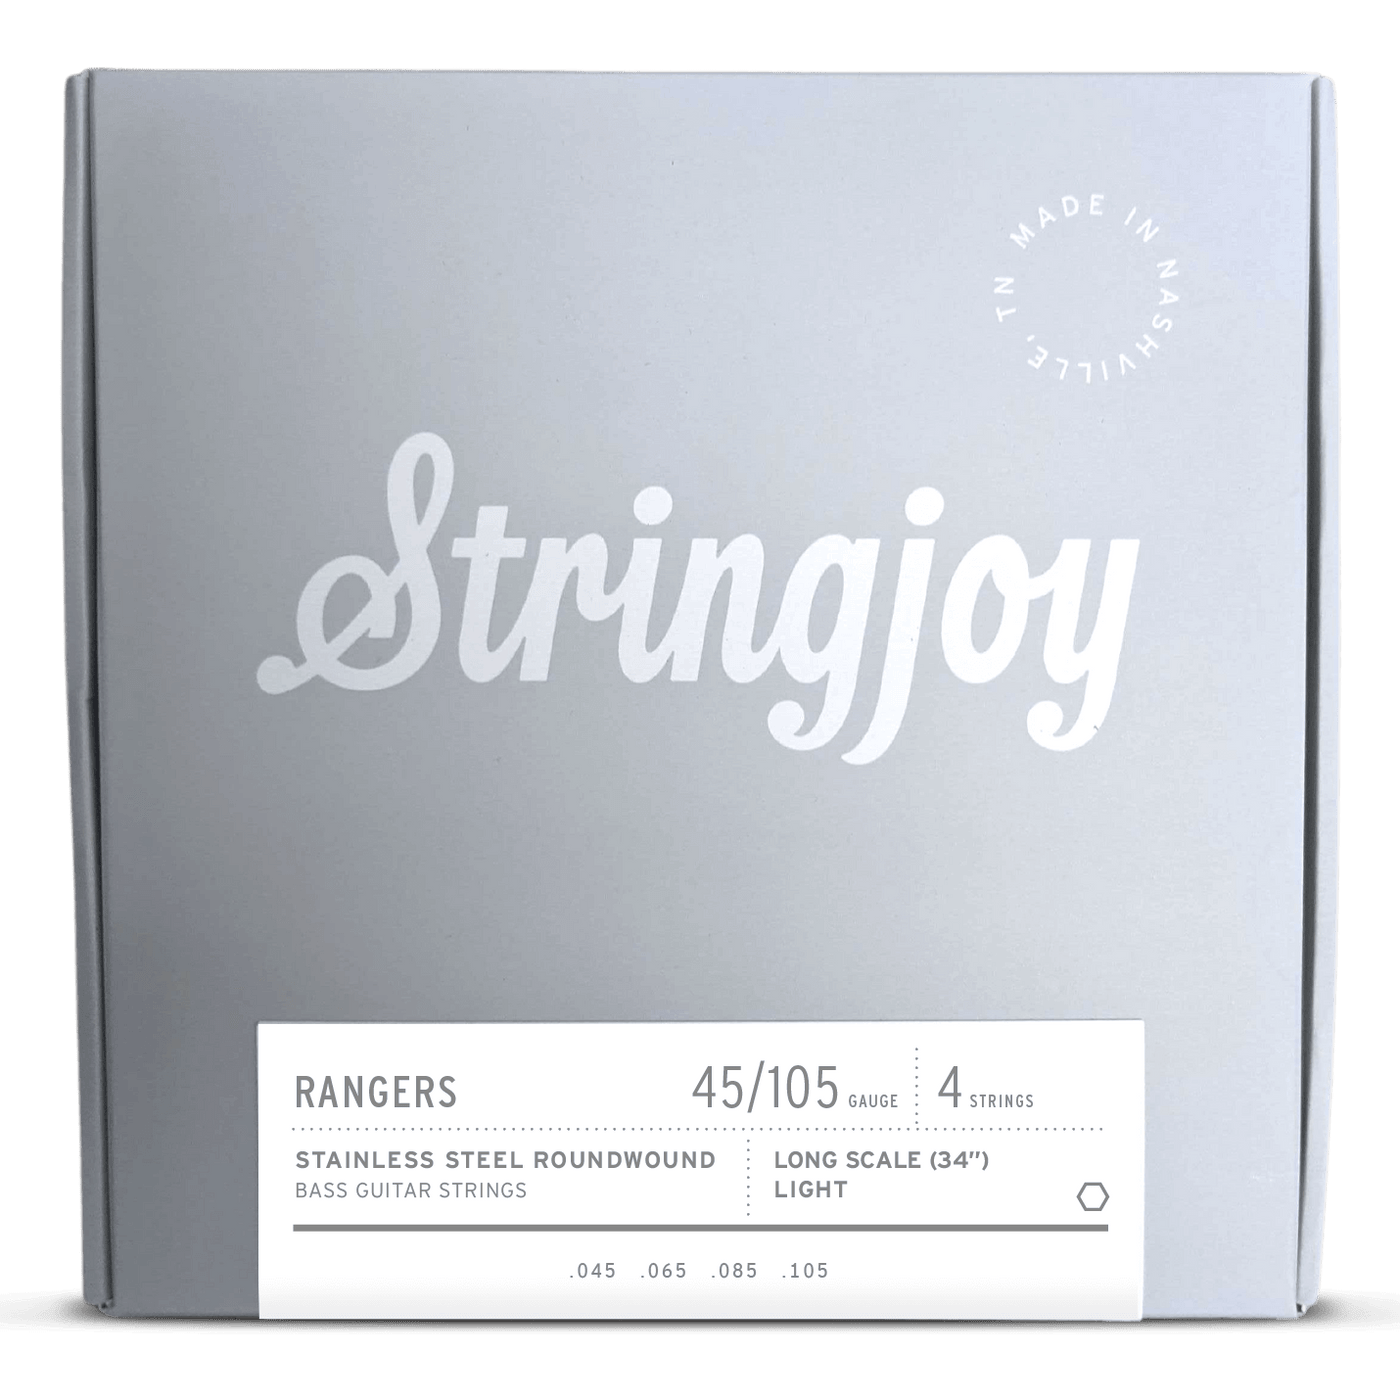 Stringjoy Long Scale Rangers Light Gauge 4 (45-105) - Cuerdas de Bajo Eléctrico Acero Inoxidable